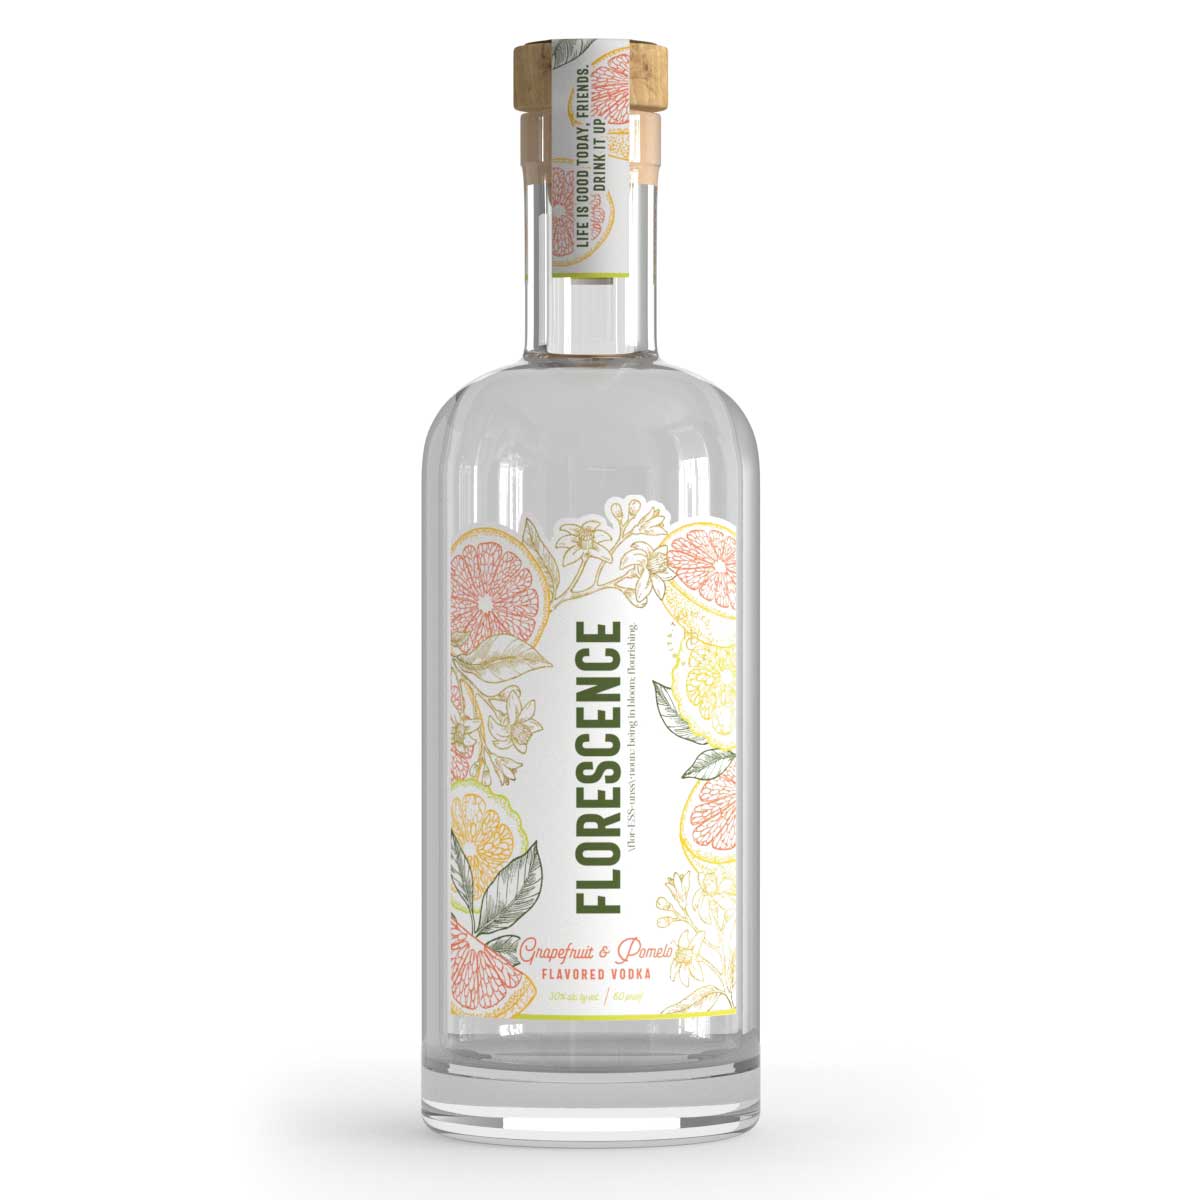 Florescence: Grapefruit & Pomelo Flavored Vodka